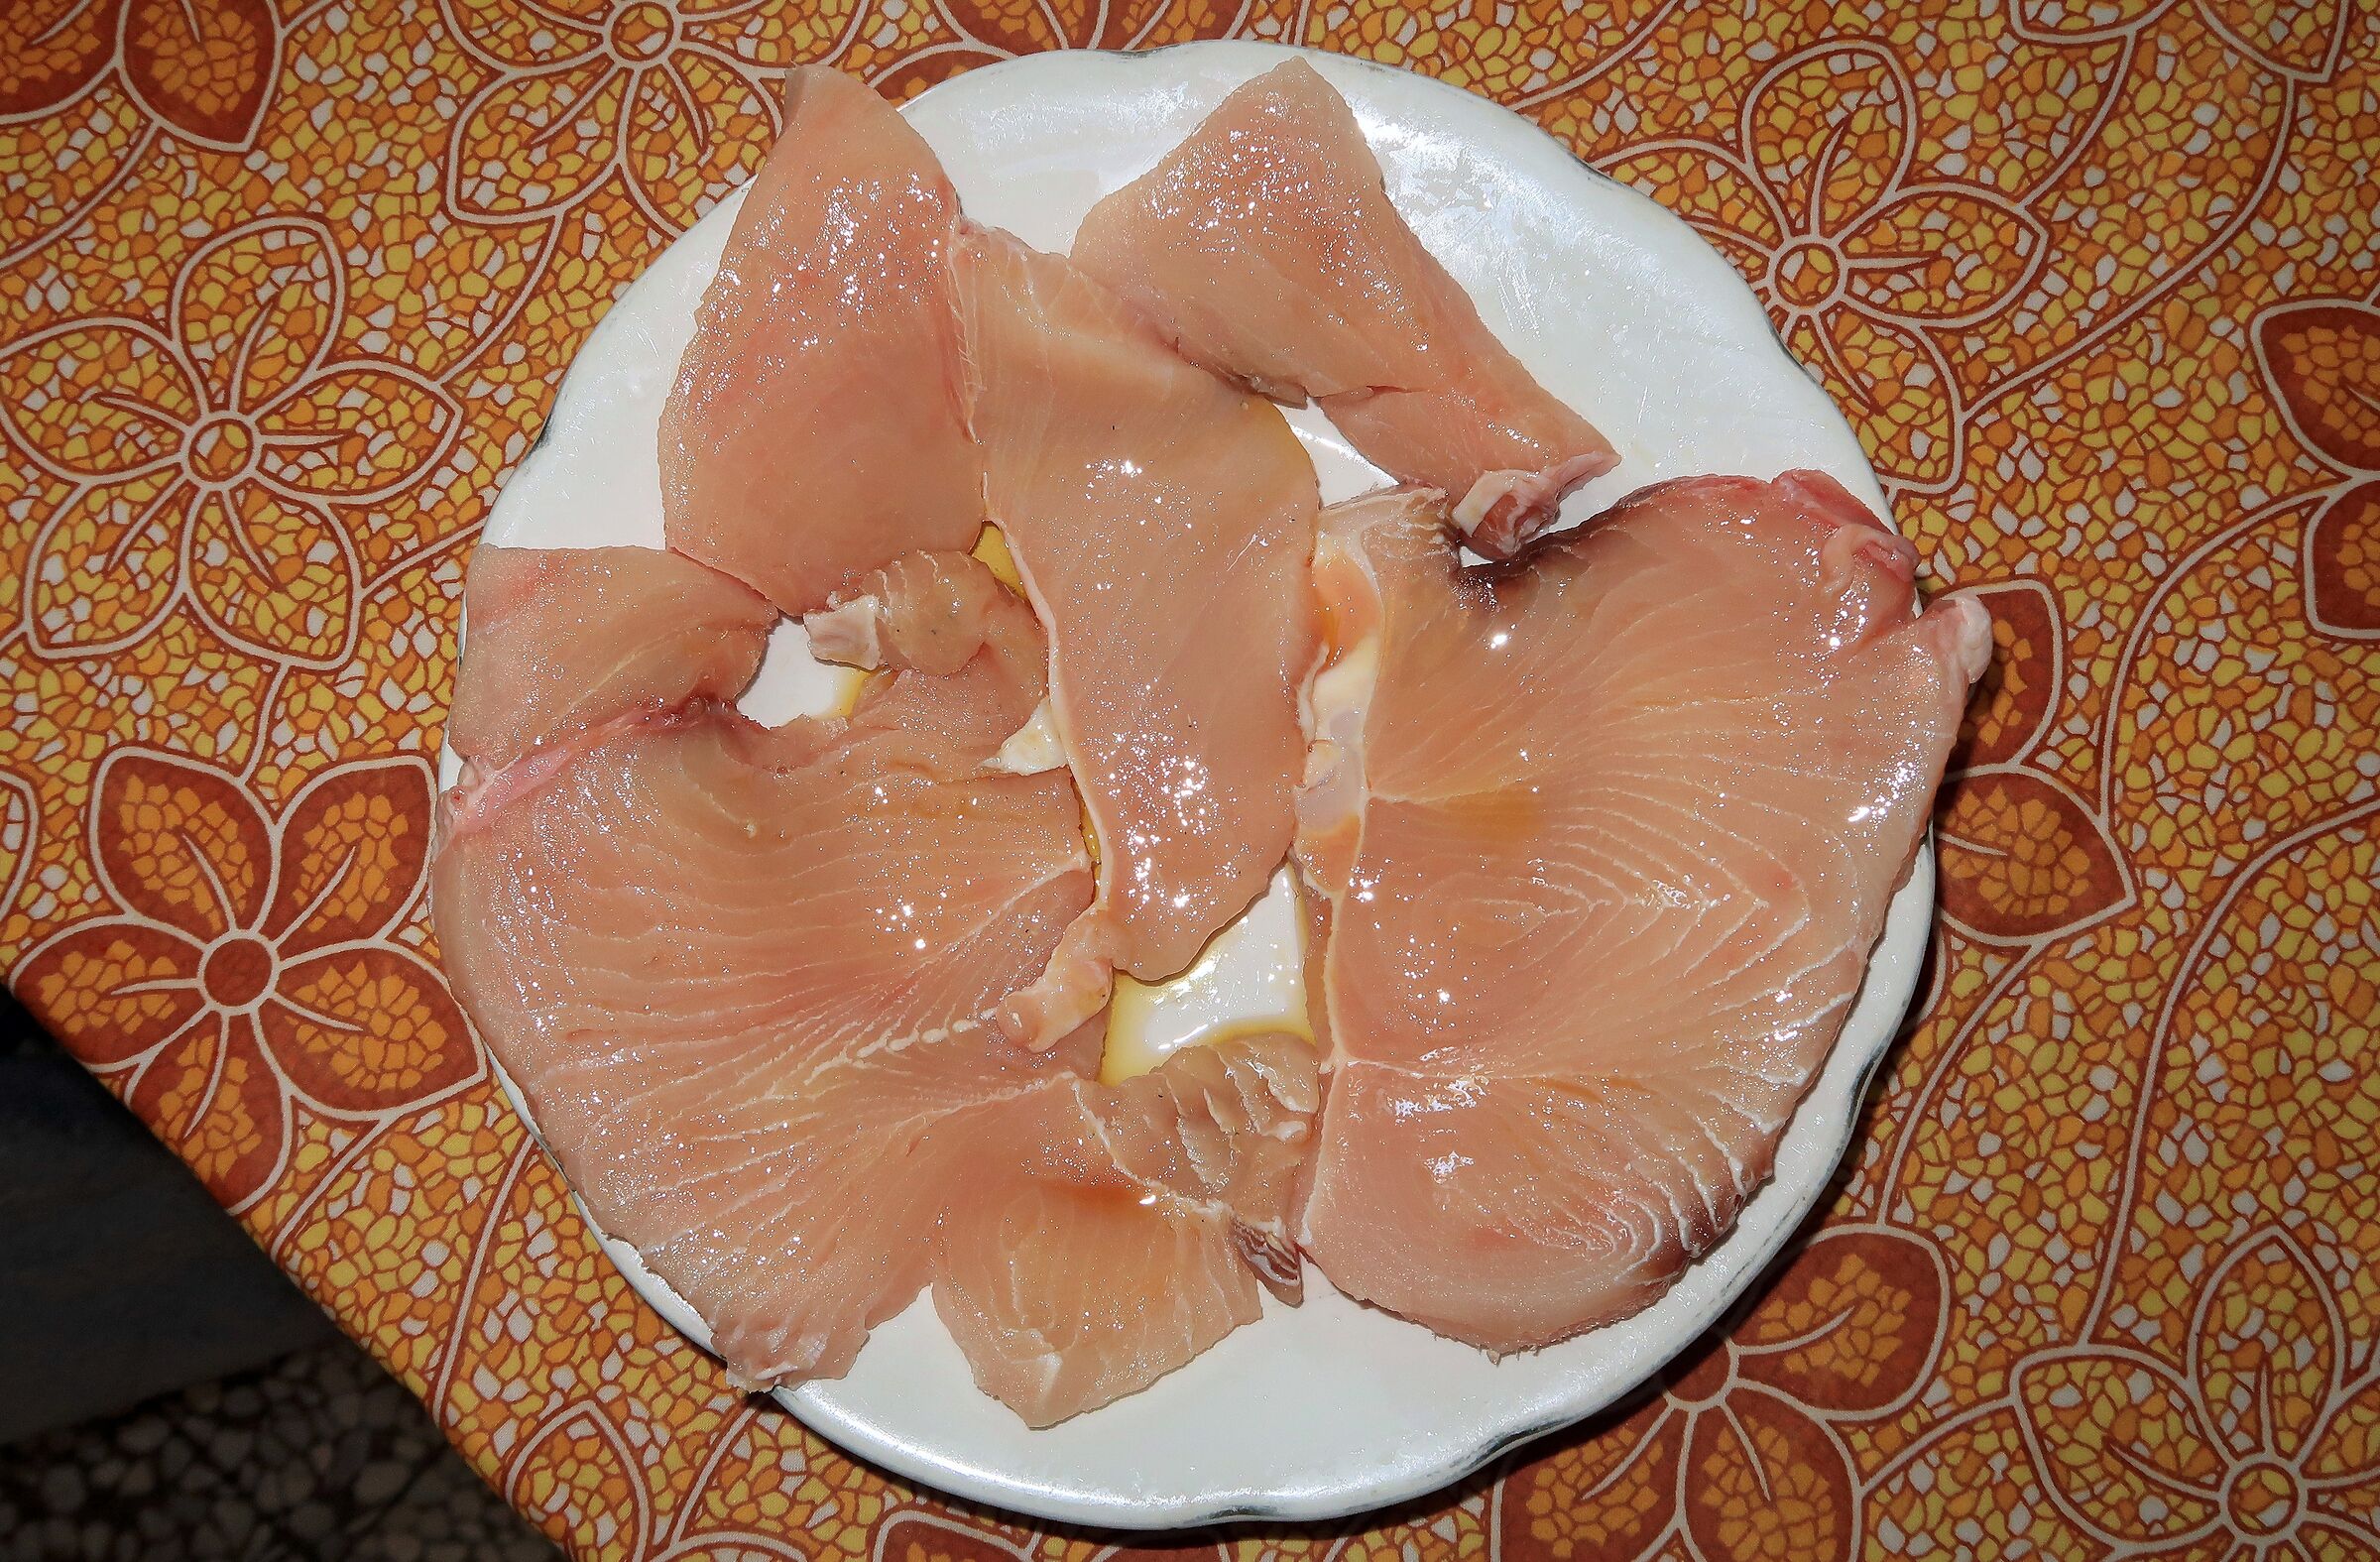 Calabrai: Swordfish slice (good ...)...